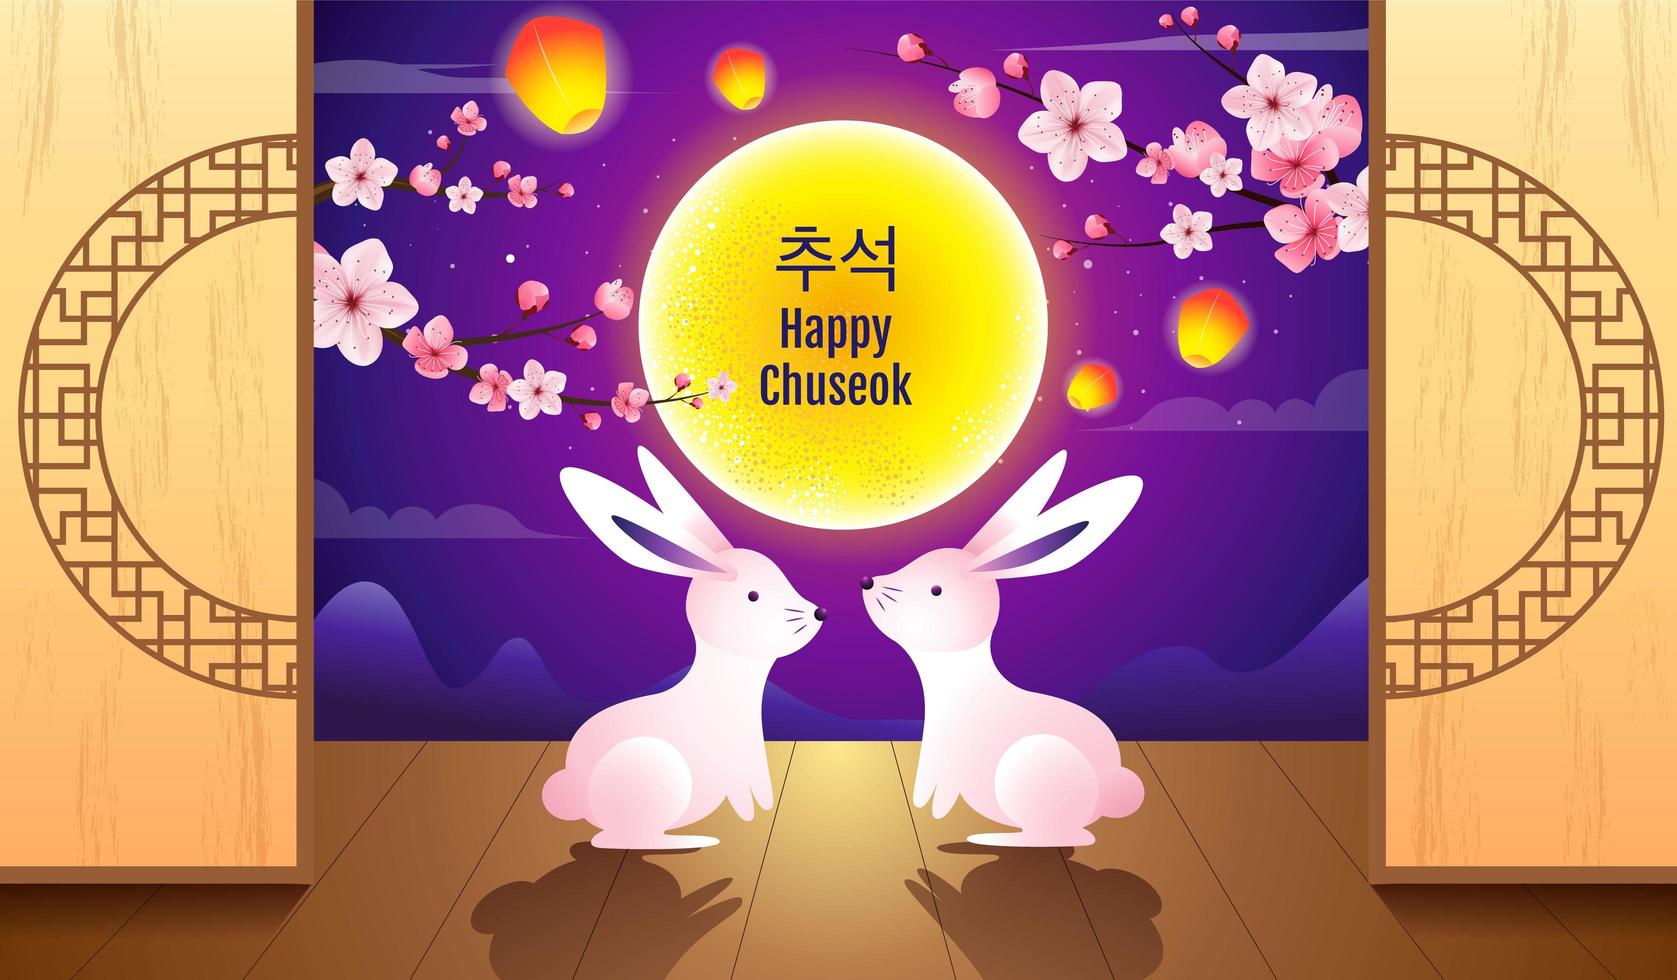 conception de chuseok heureux avec deux lapins et un ciel brillant vecteur